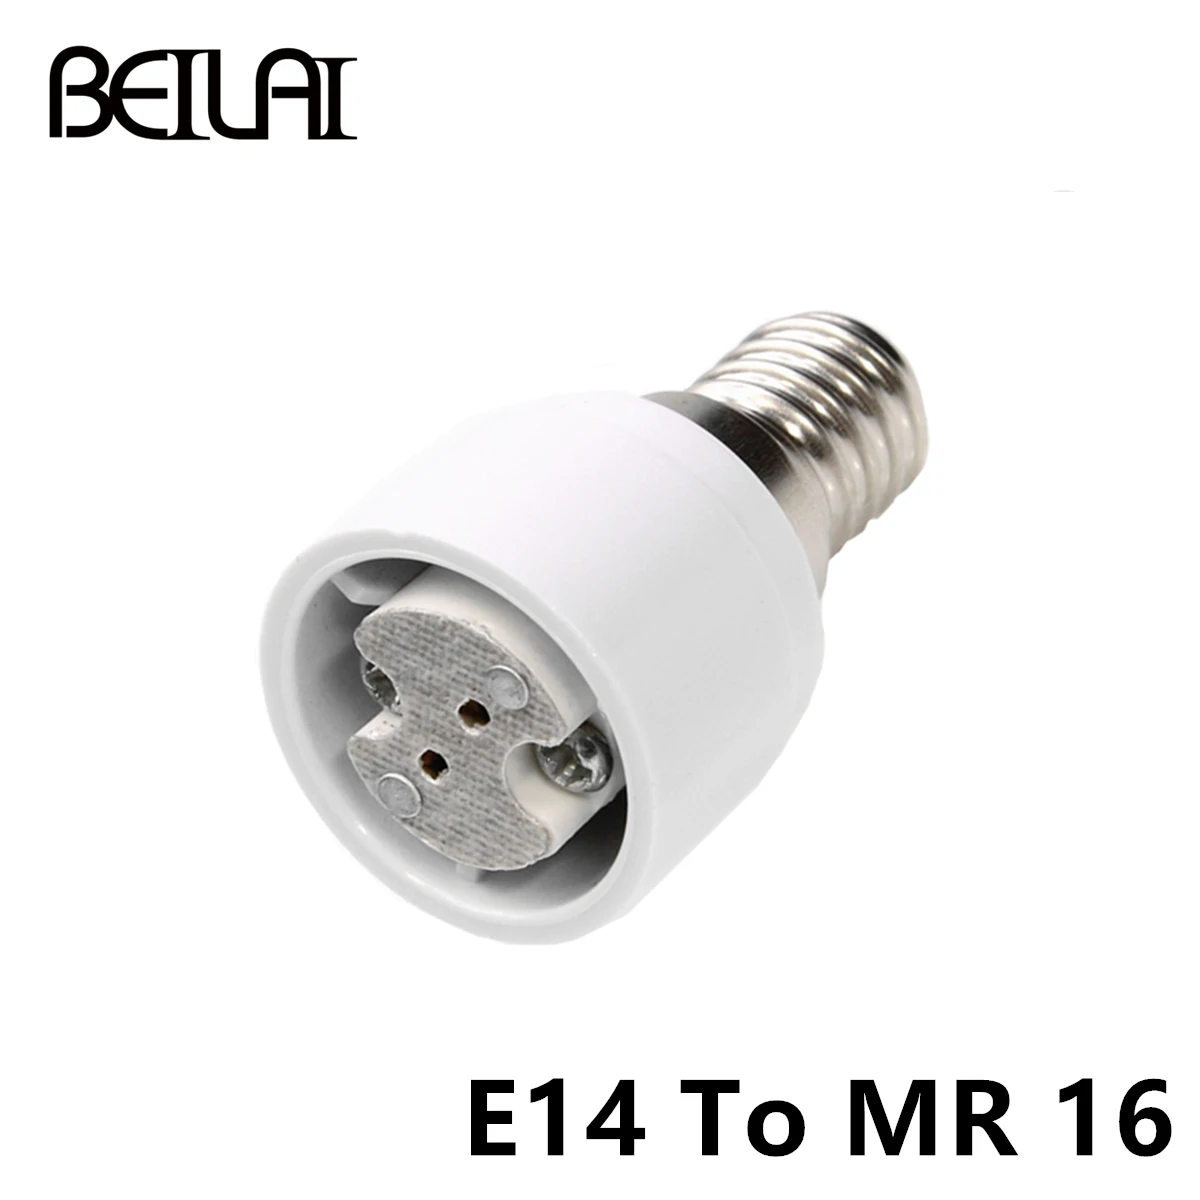 E27 для E14 MR16 GU10 конвертер светодиодный светильник для светодиодные лампочки RGB для подключения адаптера Материал огнеупорные адаптер держатель лампы - Испускаемый цвет: E14 To MR16